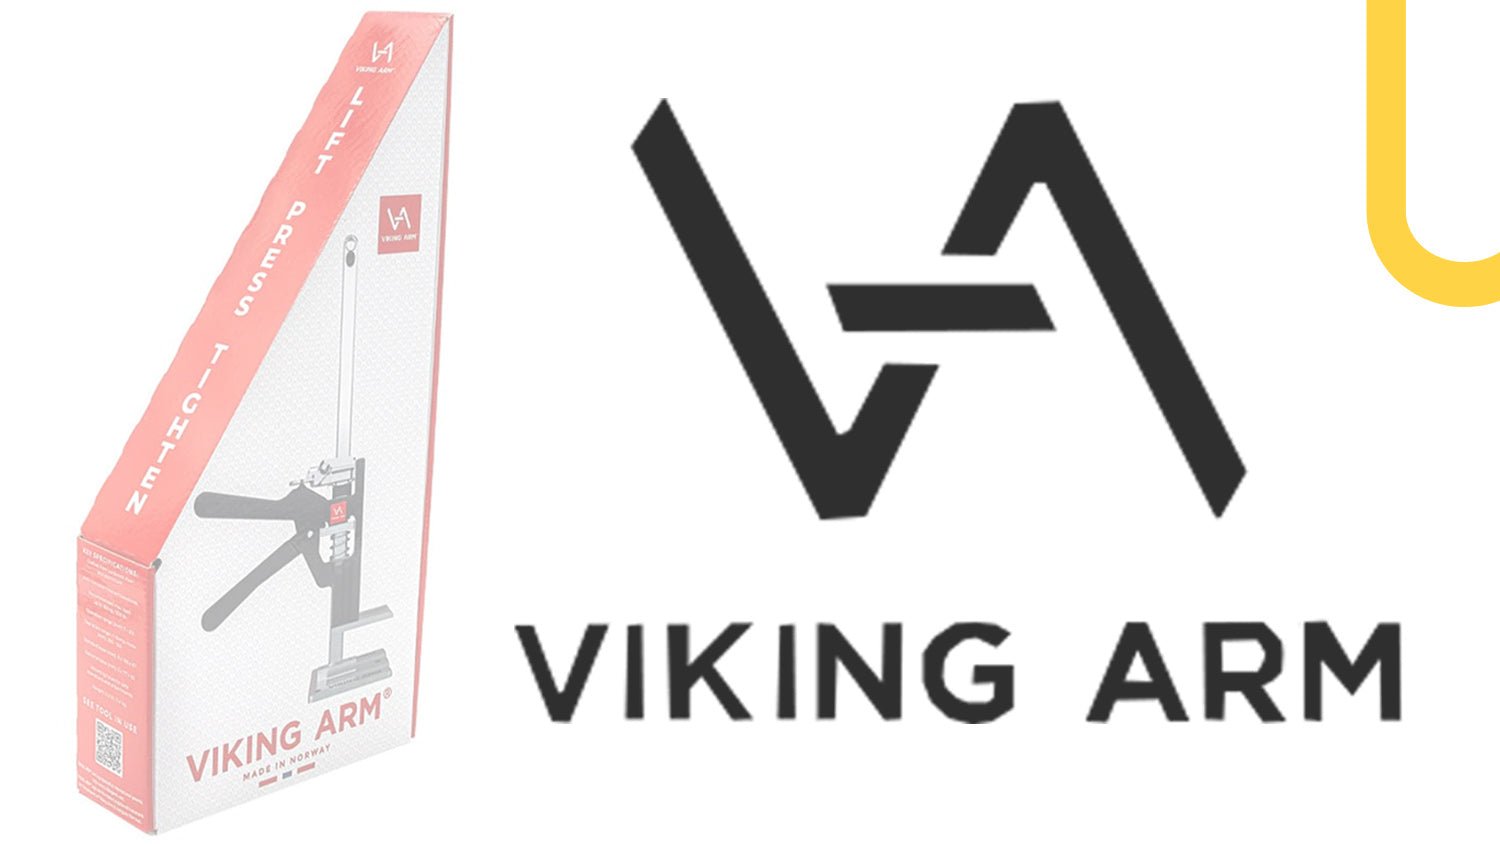 NEW Viking Arm Products coming JAN 23 - TF Tools Ltd